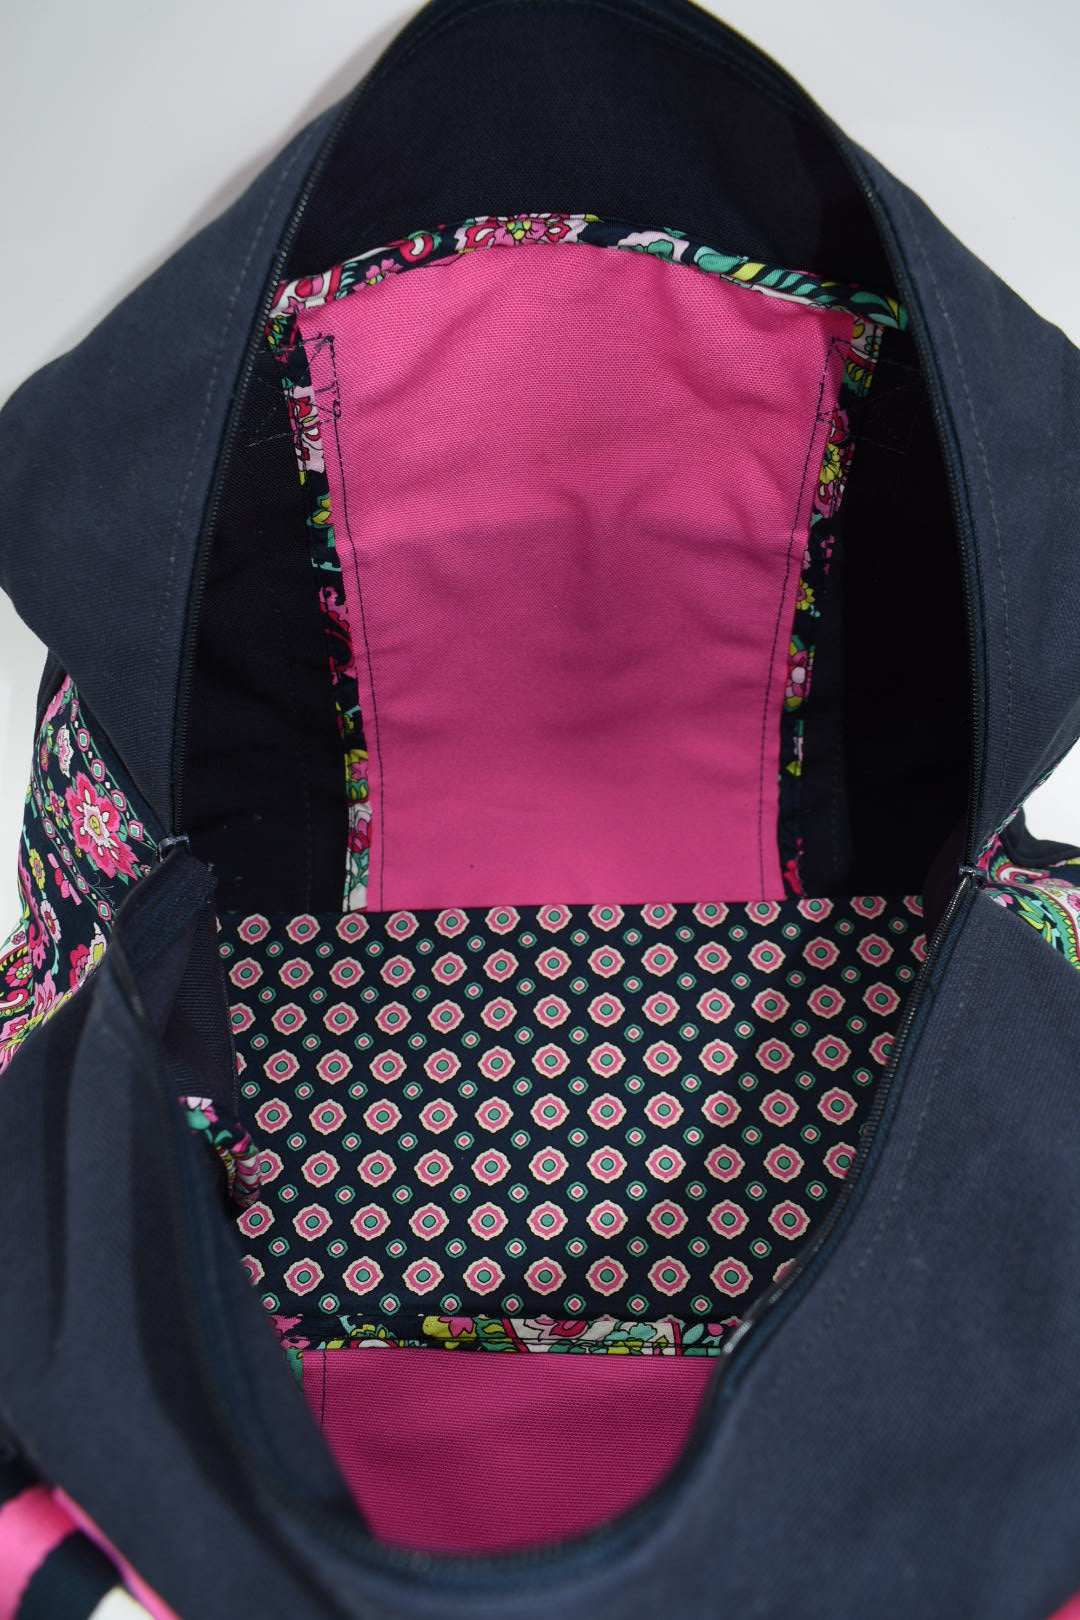 Vera Bradley Colorblock Duffel Bag in Petal Paisley Pattern